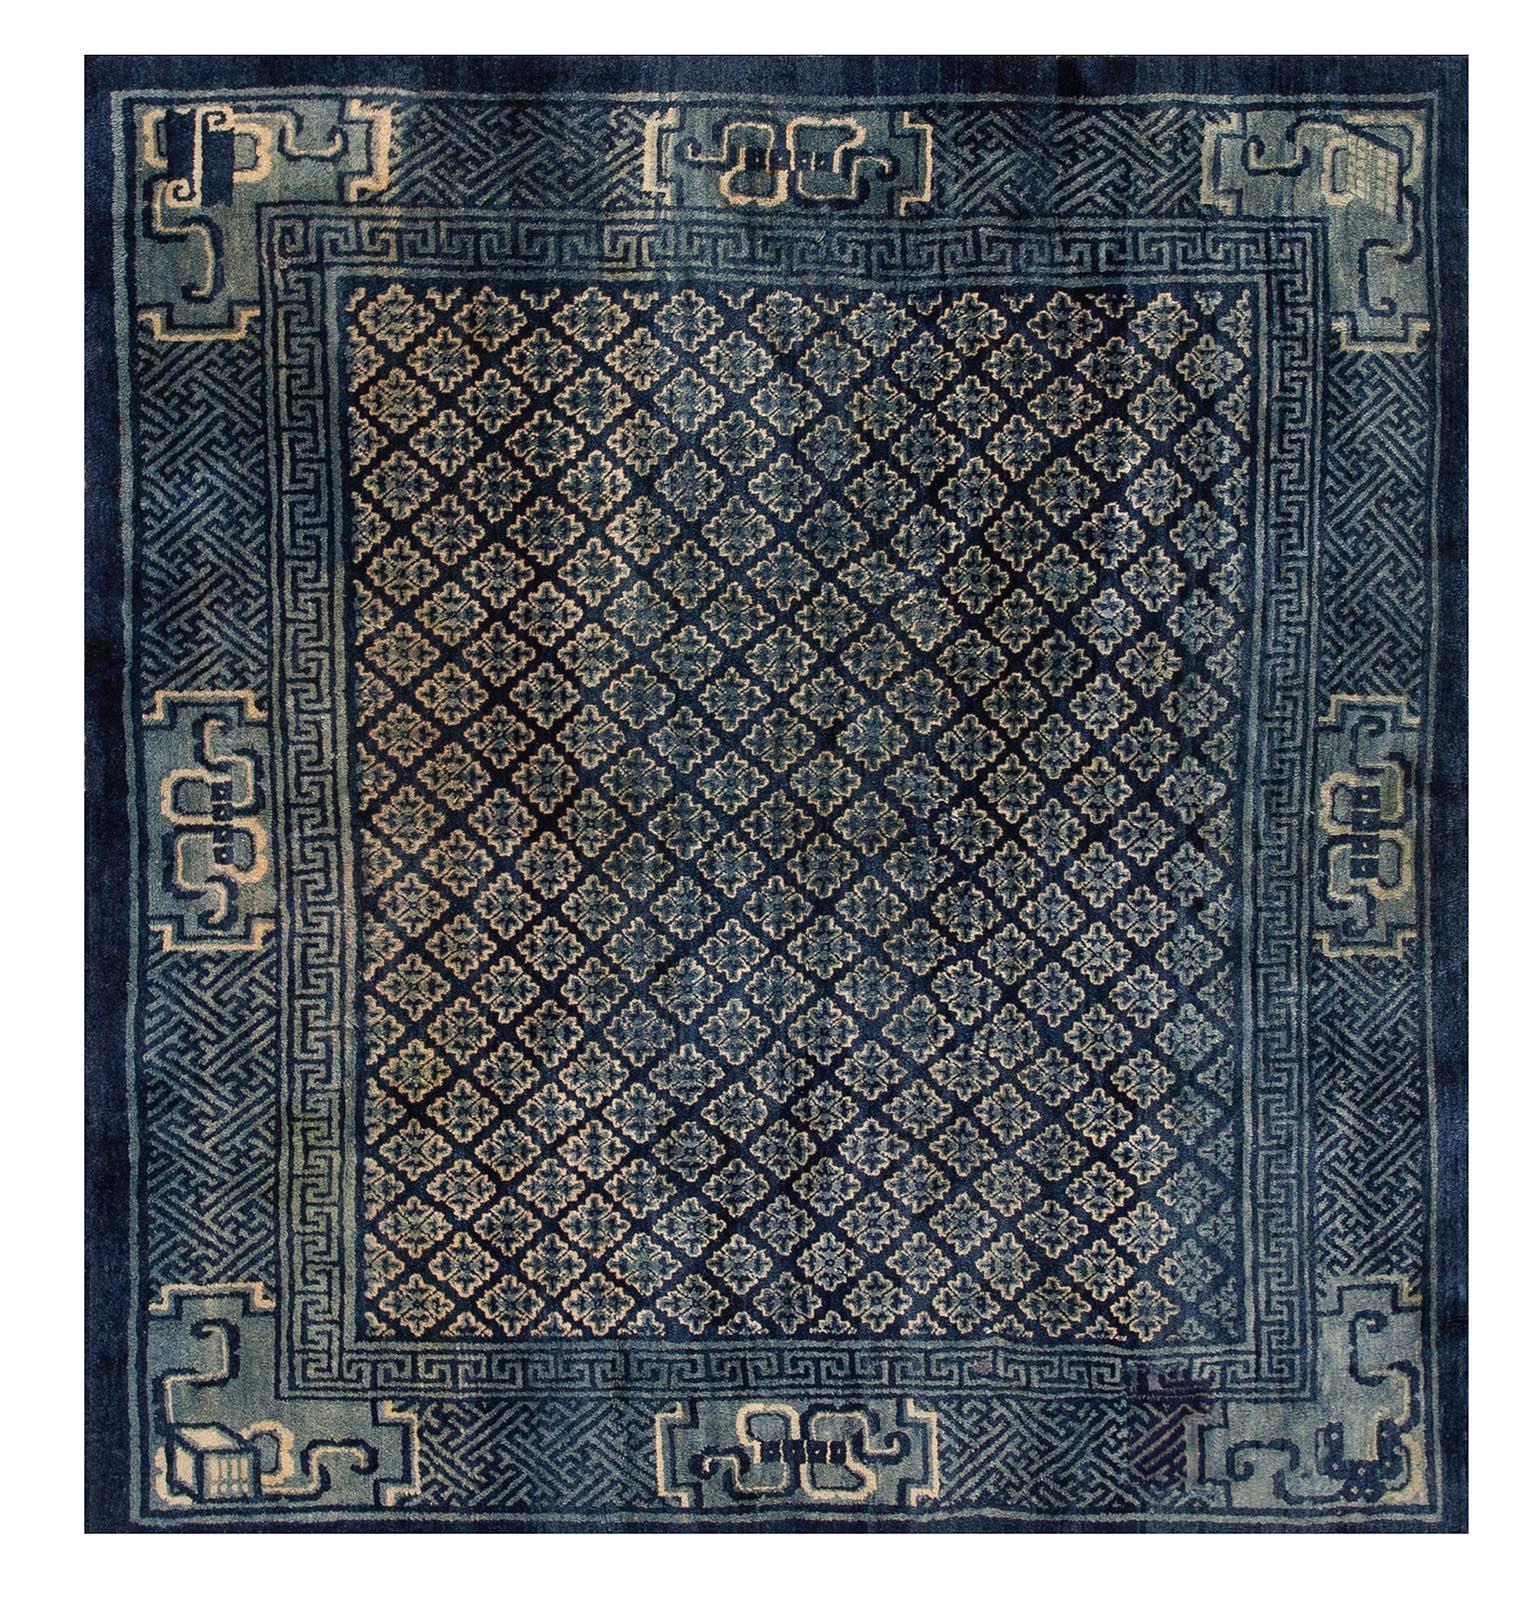 Chinesischer Baotou-Teppich des frühen 20. Jahrhunderts (  6'2" x 6'10" - 188 x 208 )